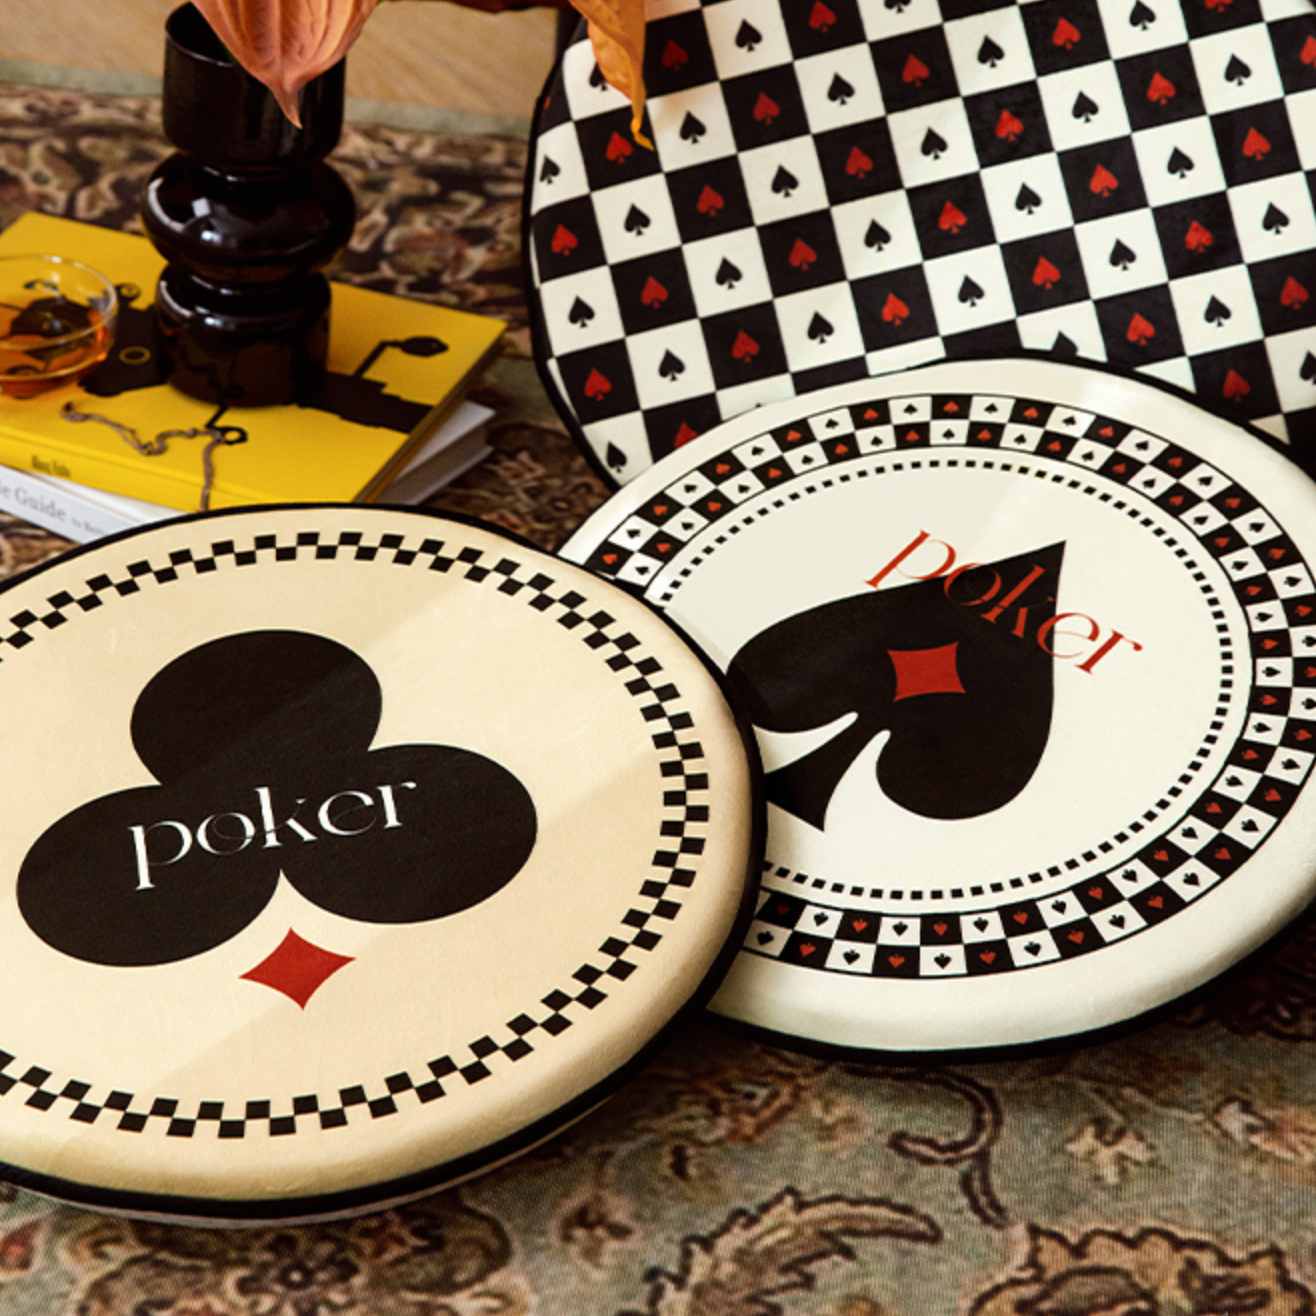 4design poker round cushion